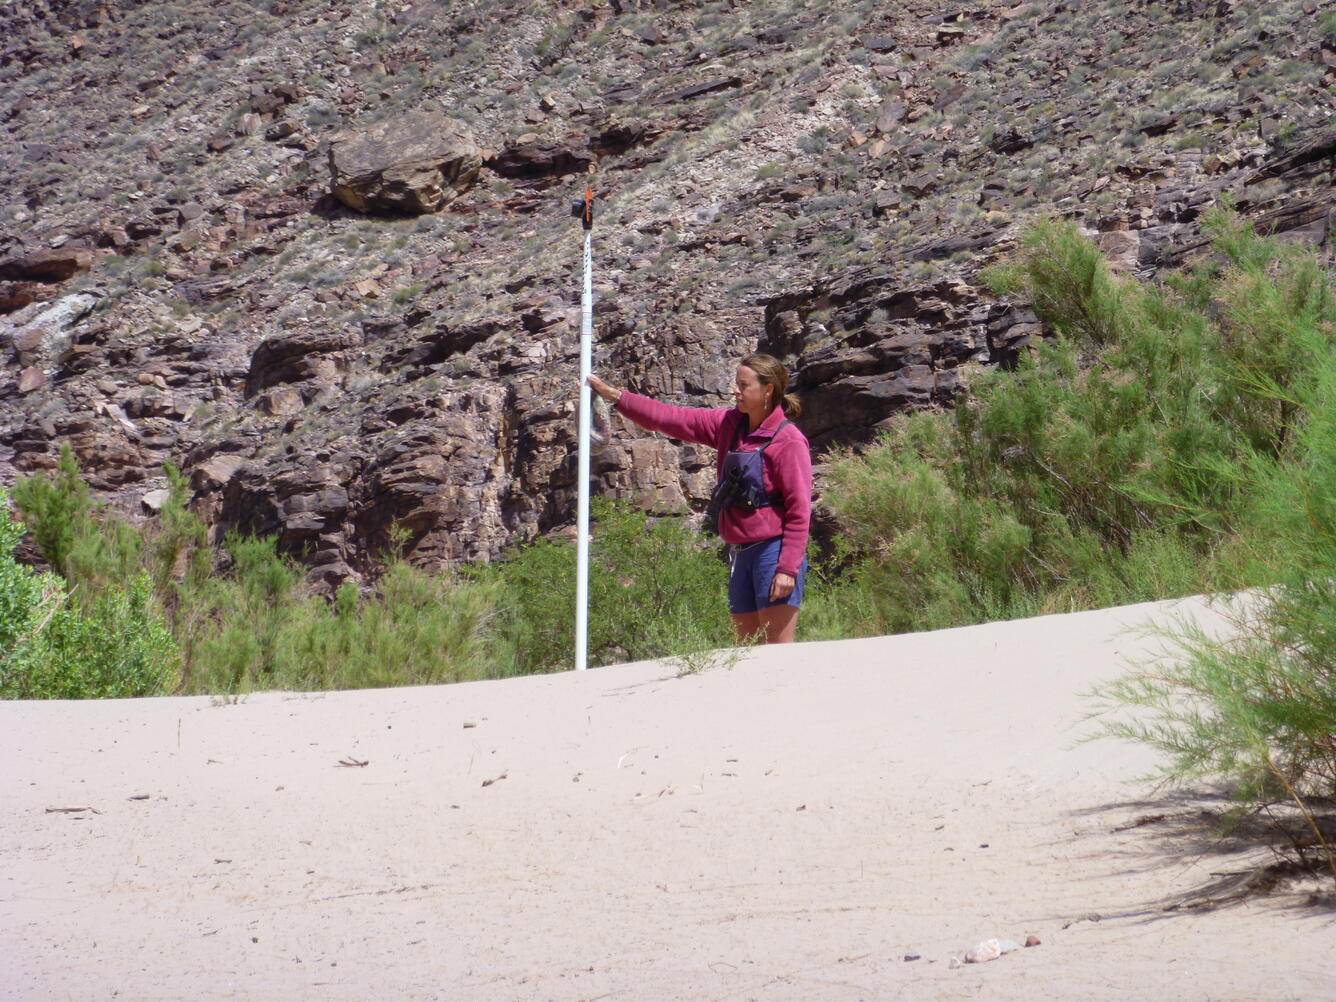 Surveying an exposed sandbar along the bank of the Colorado River 